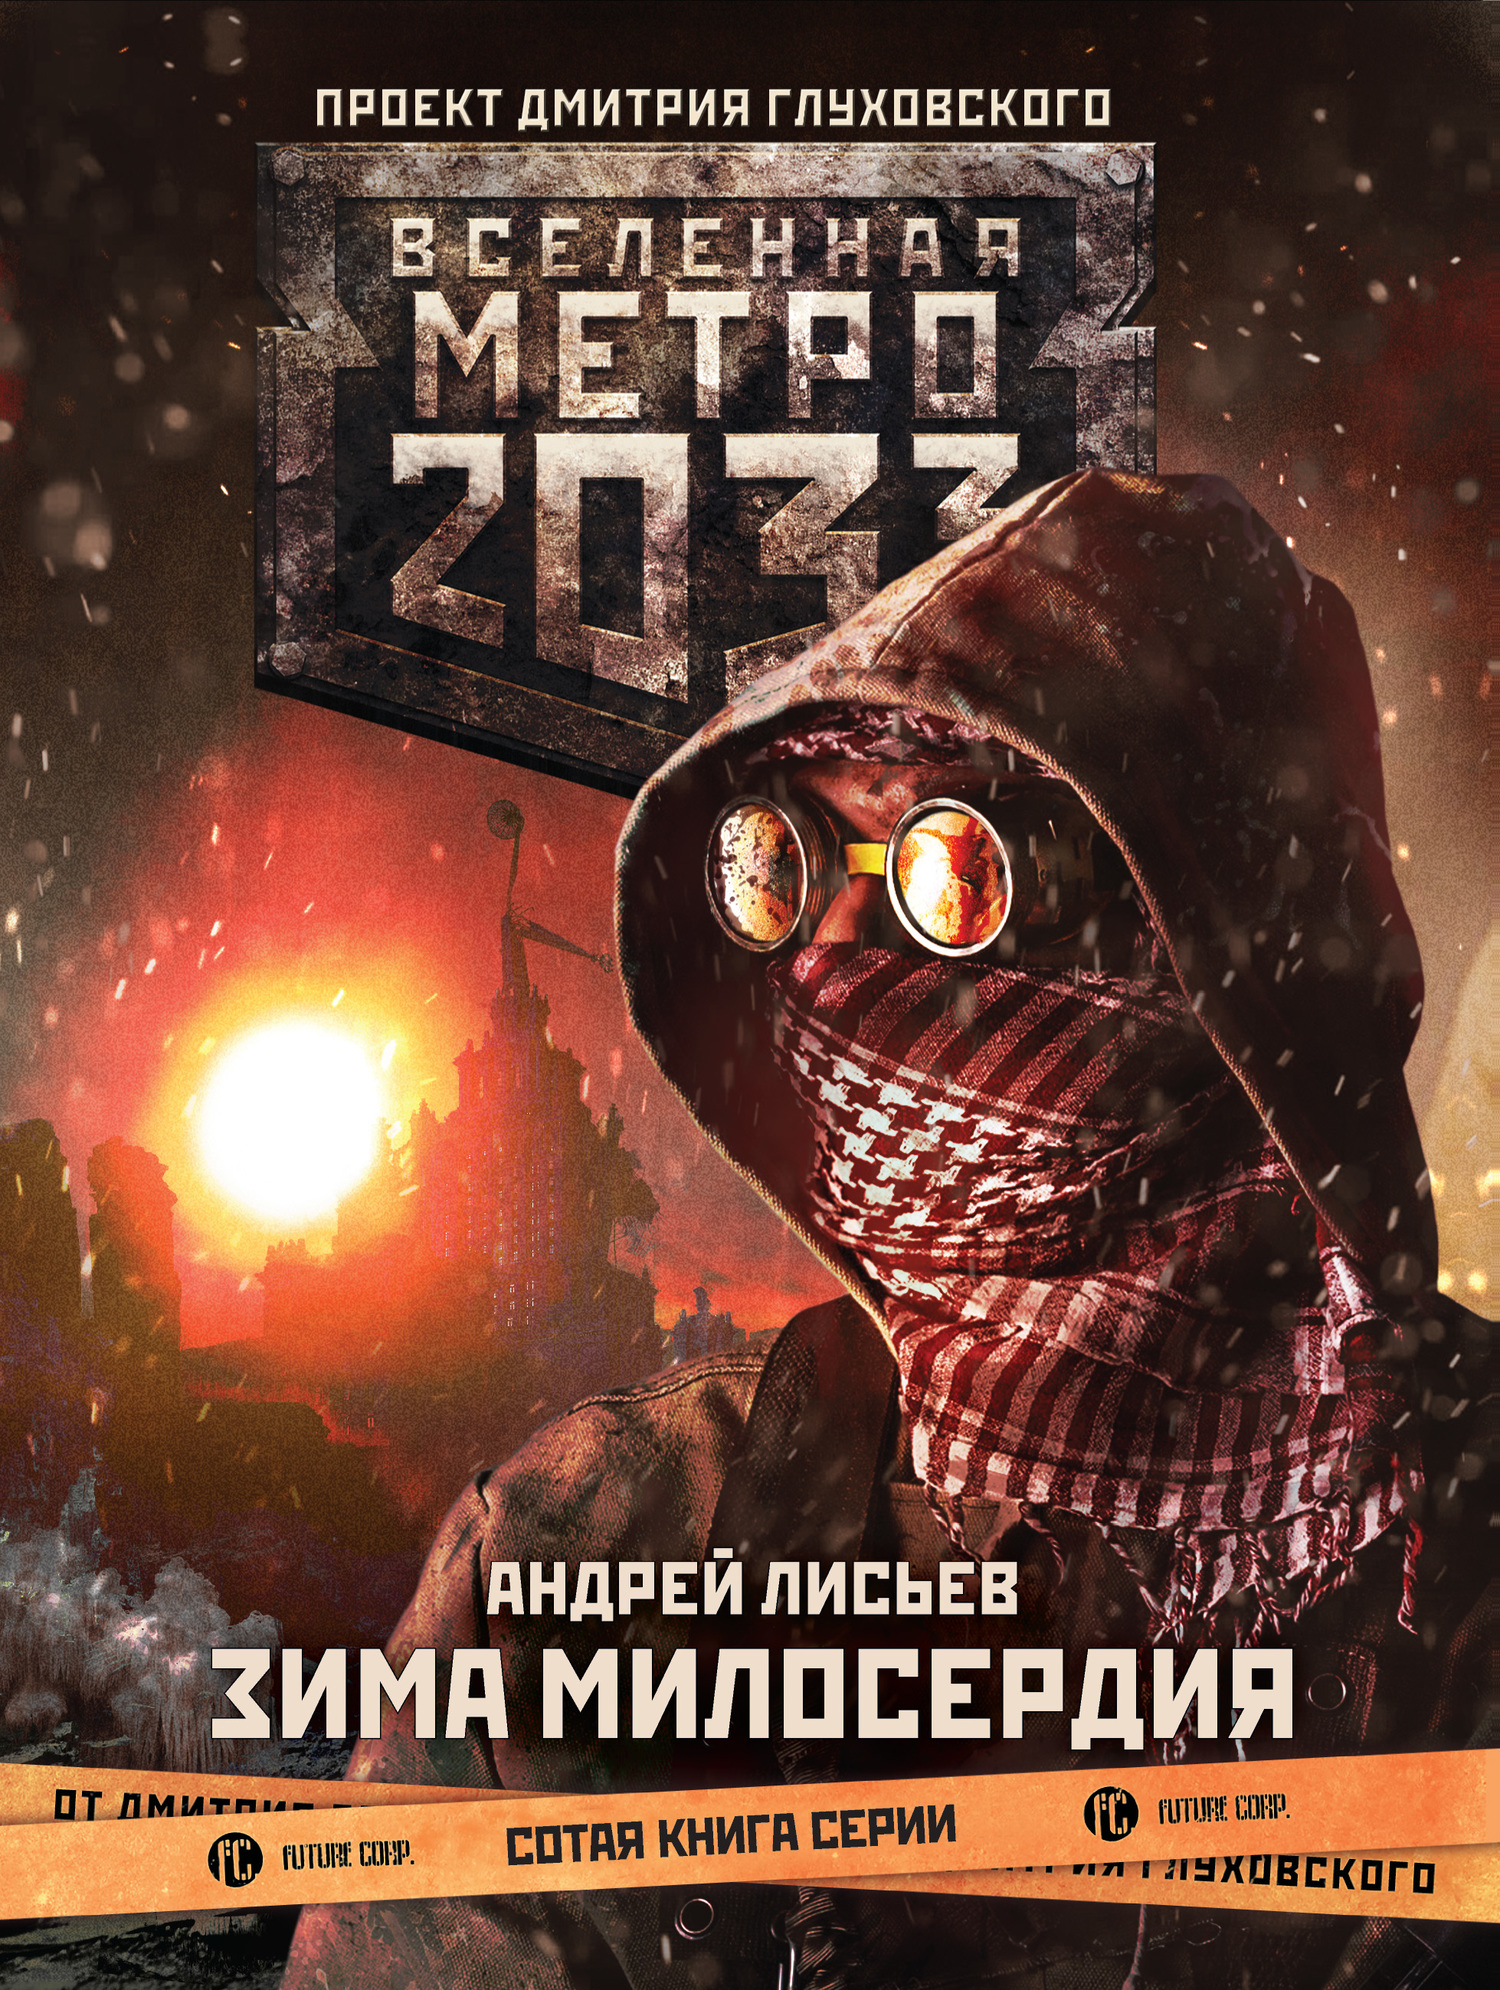 Лисьев Андрей - Метро 2033: Зима милосердия скачать бесплатно